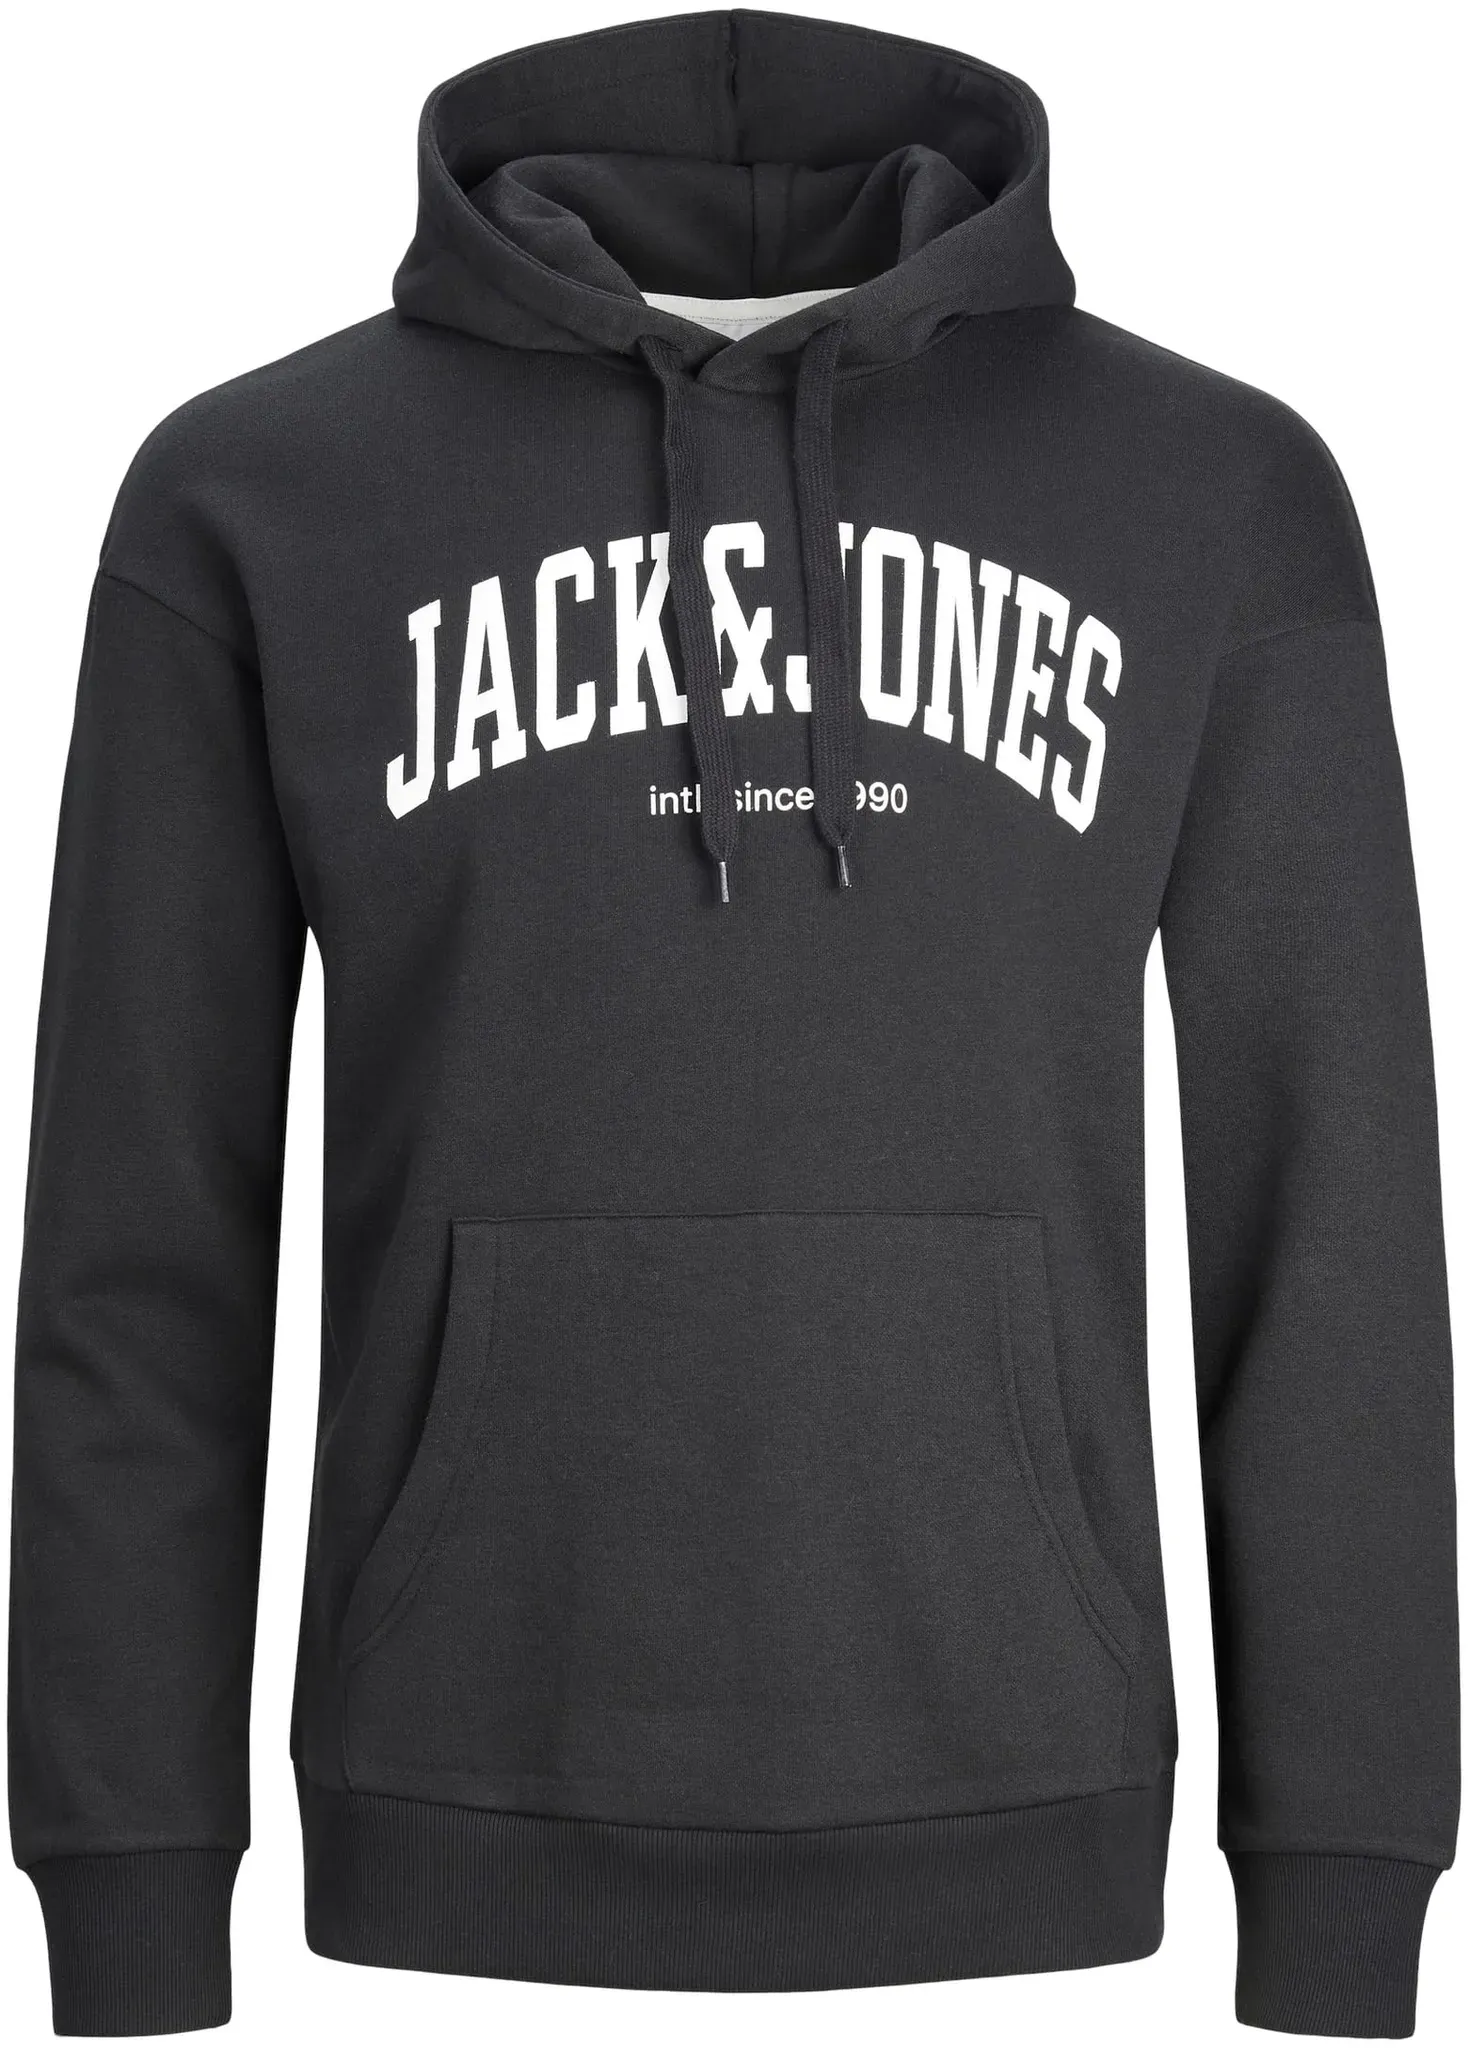 JACK & JONES Herren Logo Print Hoodie Basic Sweater Pullover Kapuzen Sweatshirt JJEJOSH, Farben:Schwarz, Größe Pullover:M